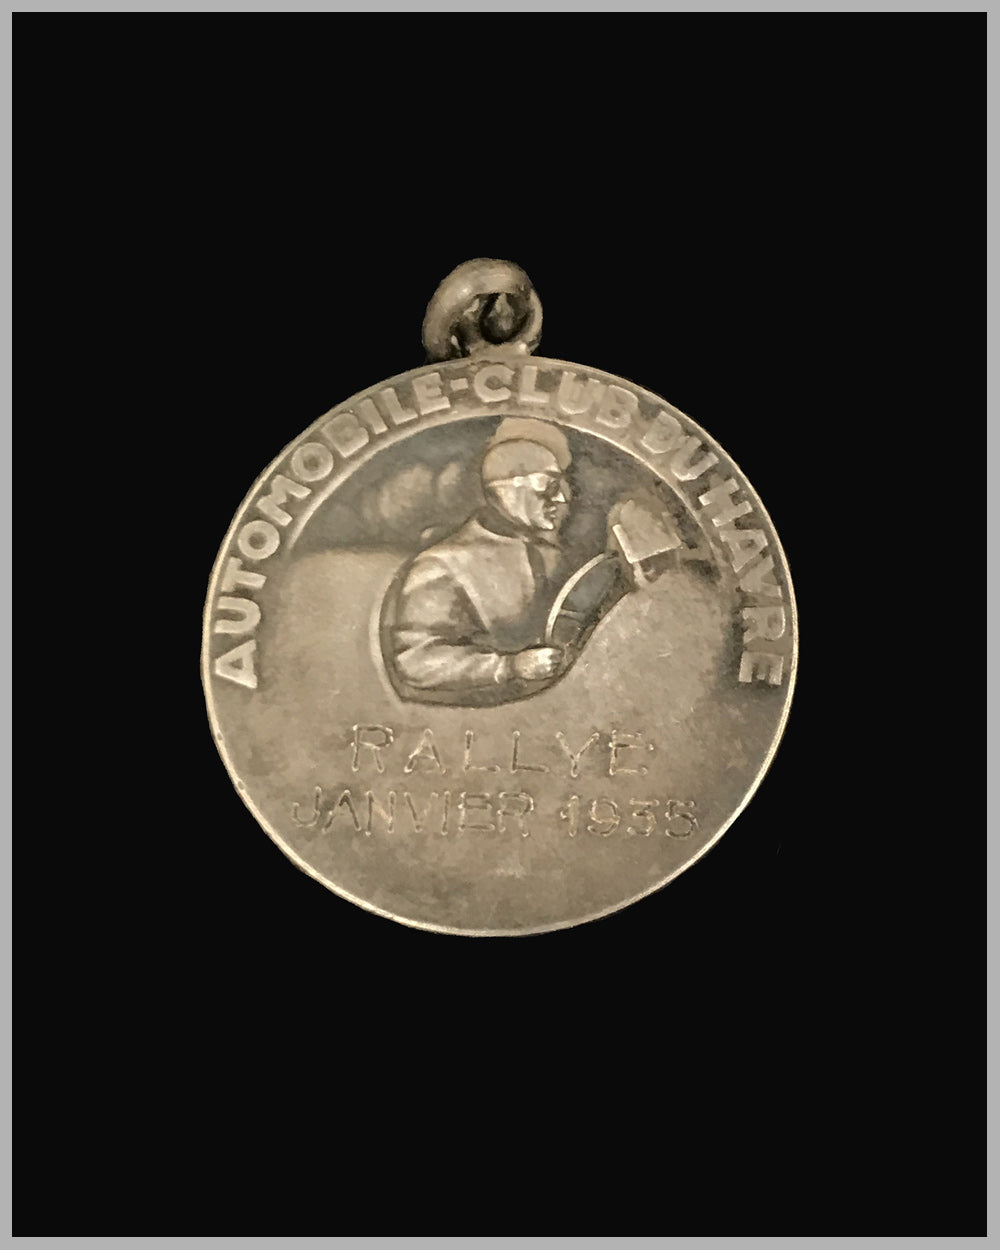 Automobile Club du Havre 1935 Rally participant’s medallion